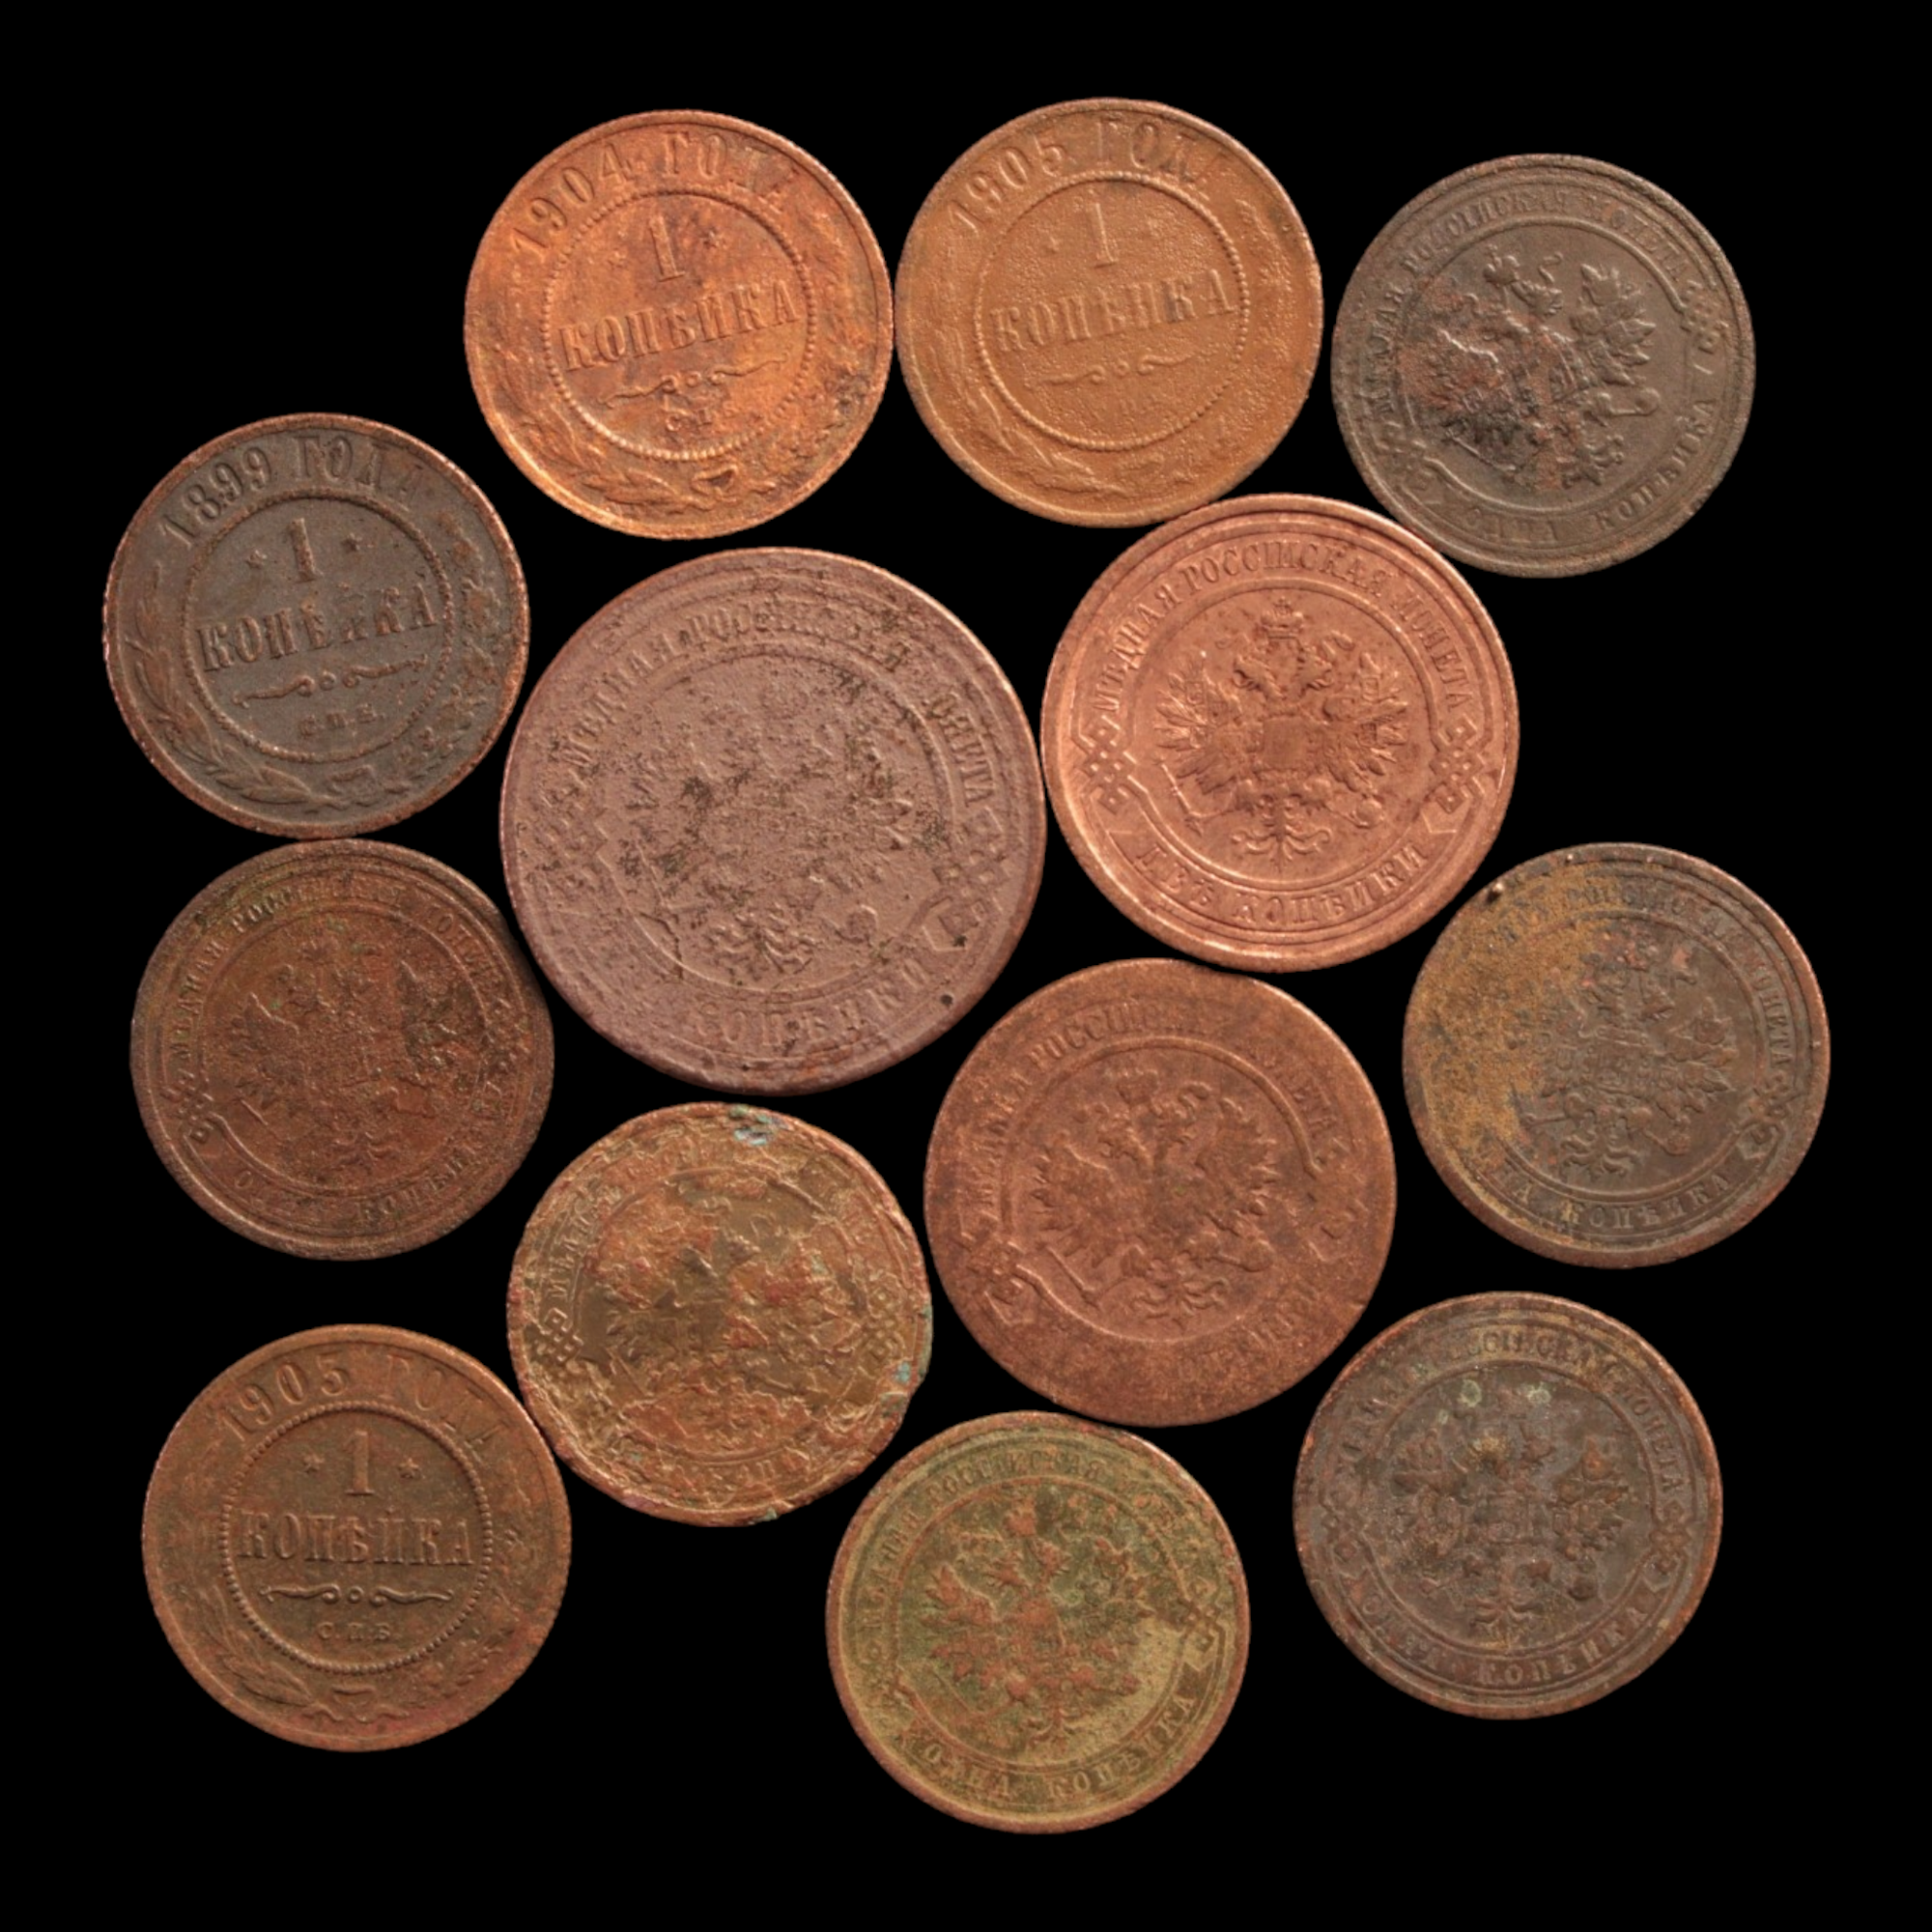 Russia, Tsar Nicholas II, Lot of 13 Copper Coins - 1894 to 1917 - Russian Empire